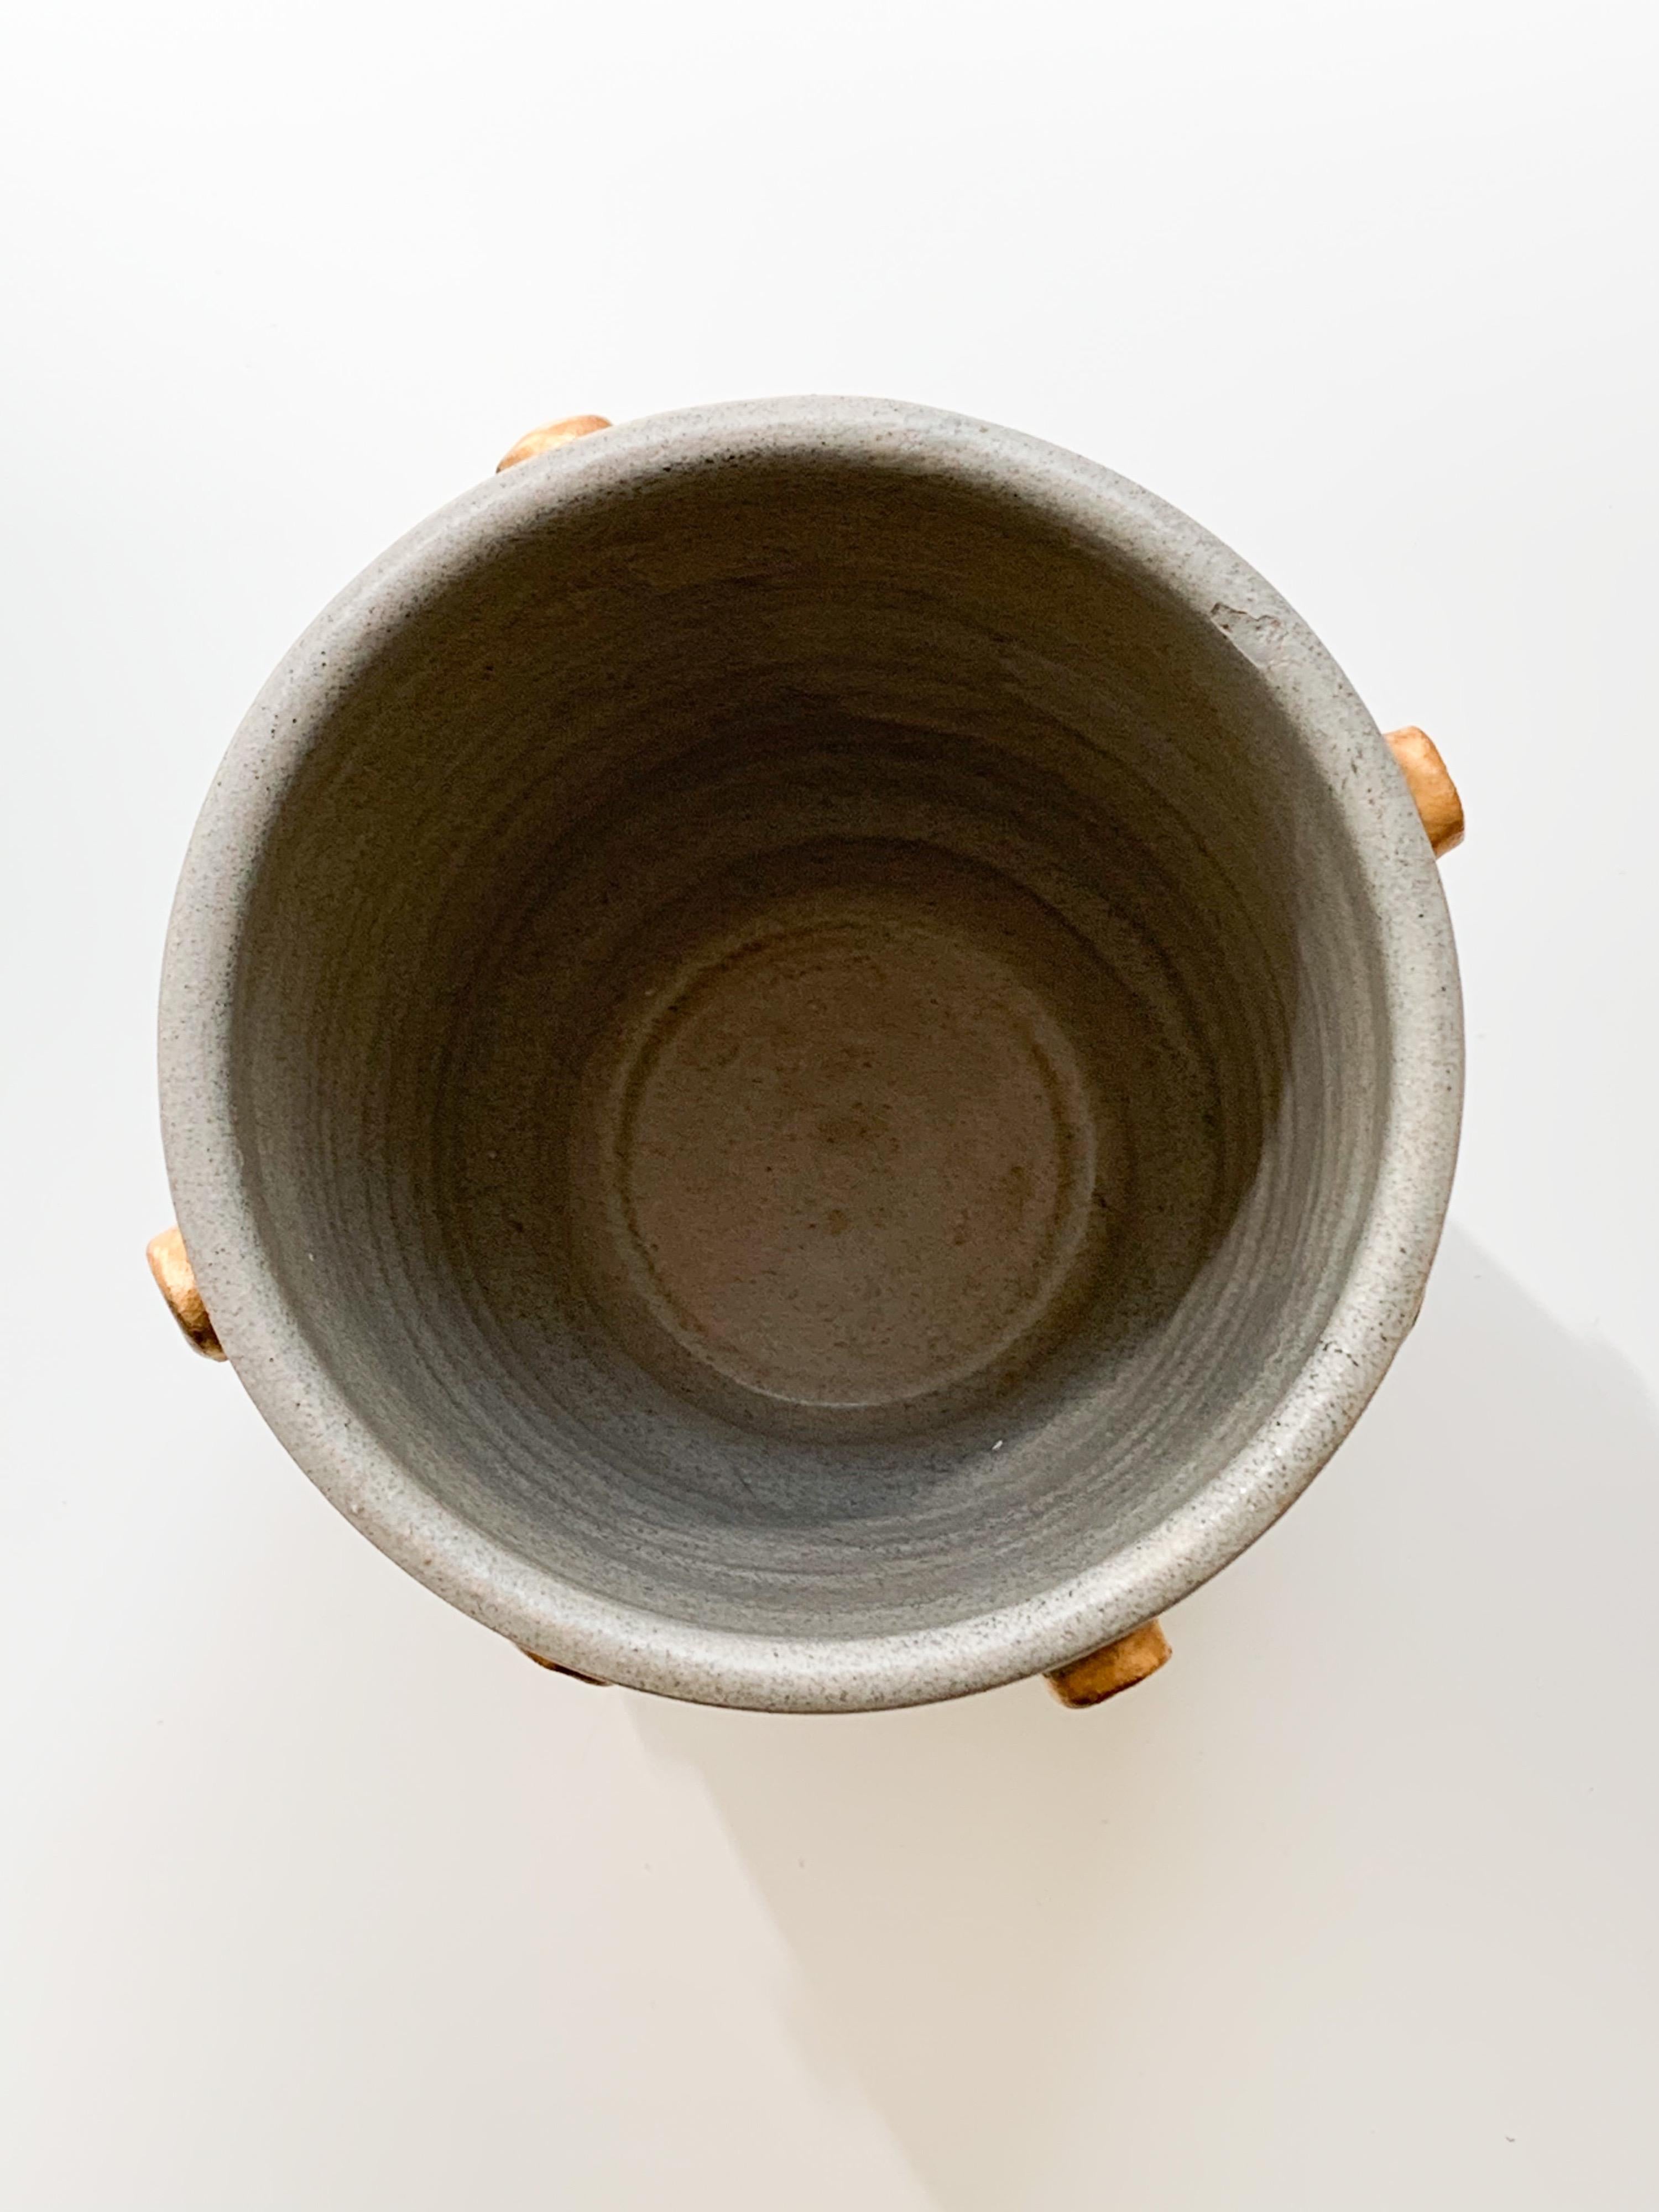 Bitossi Vase, Ceramic, Gray and Gold Hobnails, Signed 5